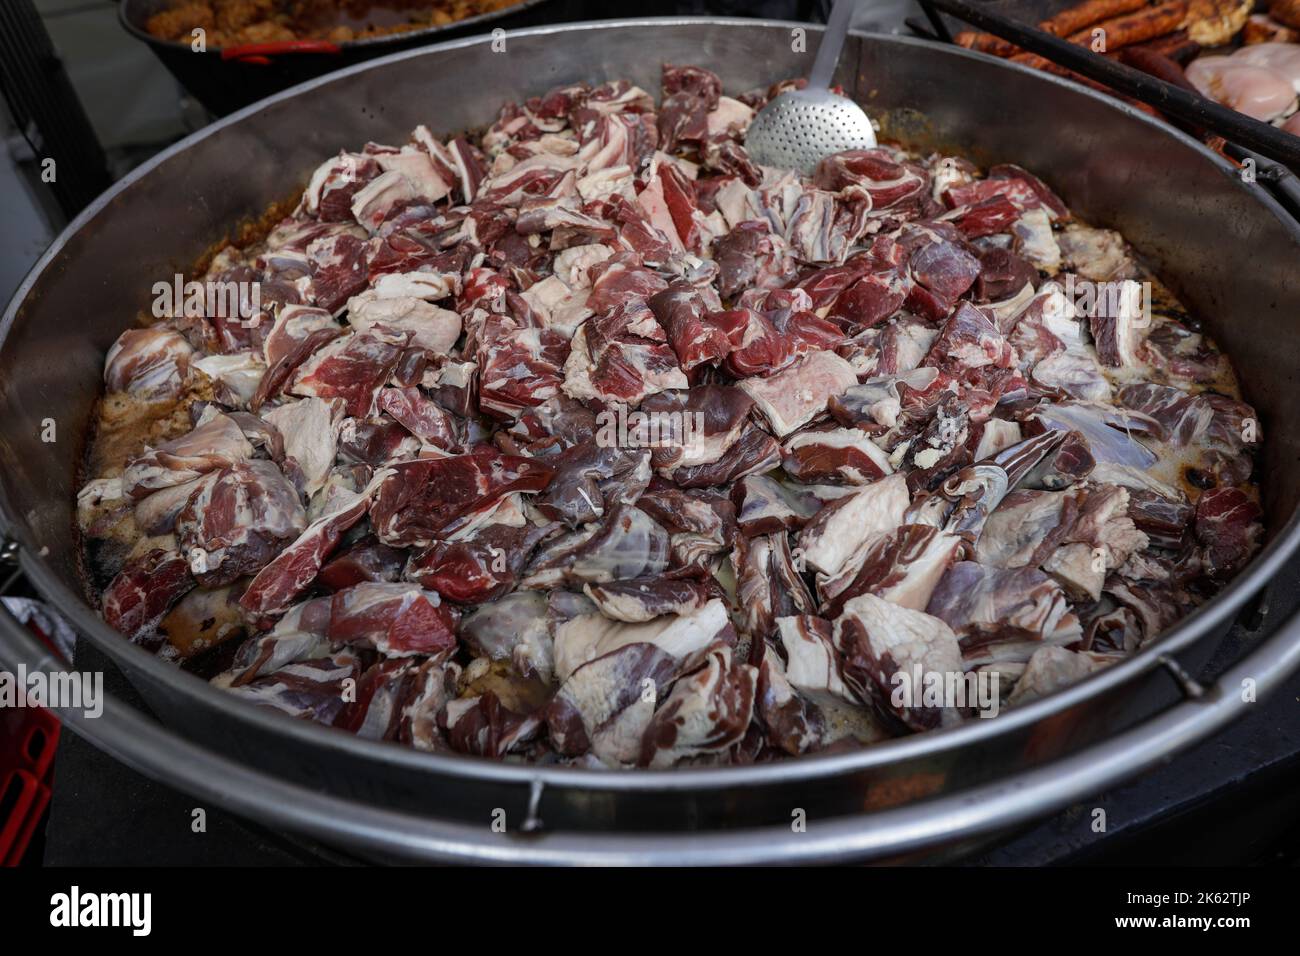 Détails de faible profondeur de champ (mise au point sélective) avec cuisson de viande d'agneau sur une grande casserole en métal. Banque D'Images